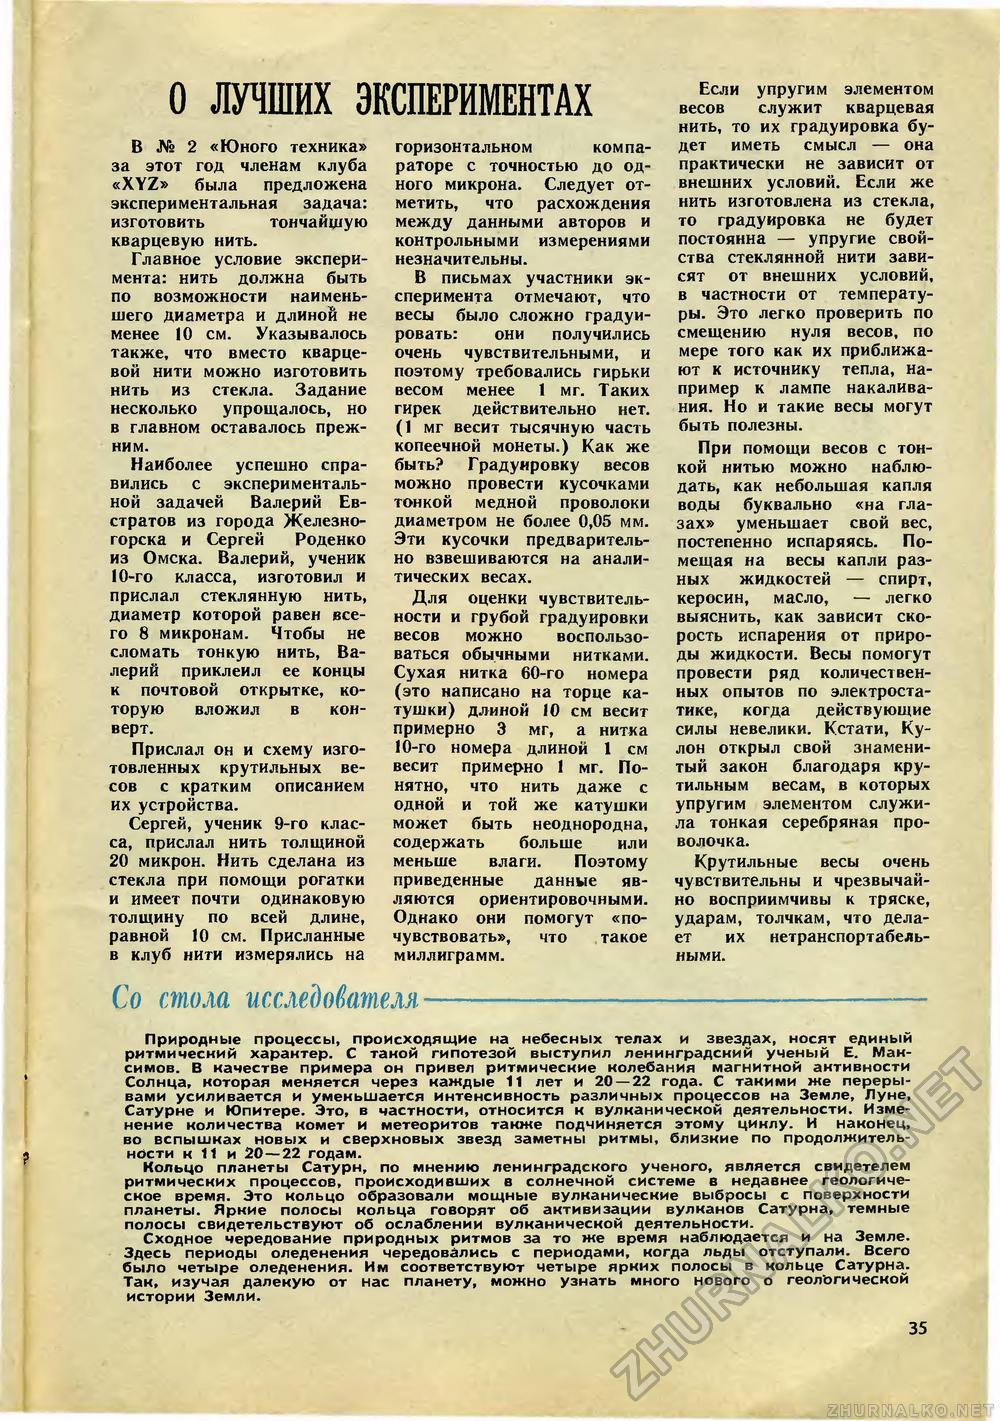   1971-12,  37